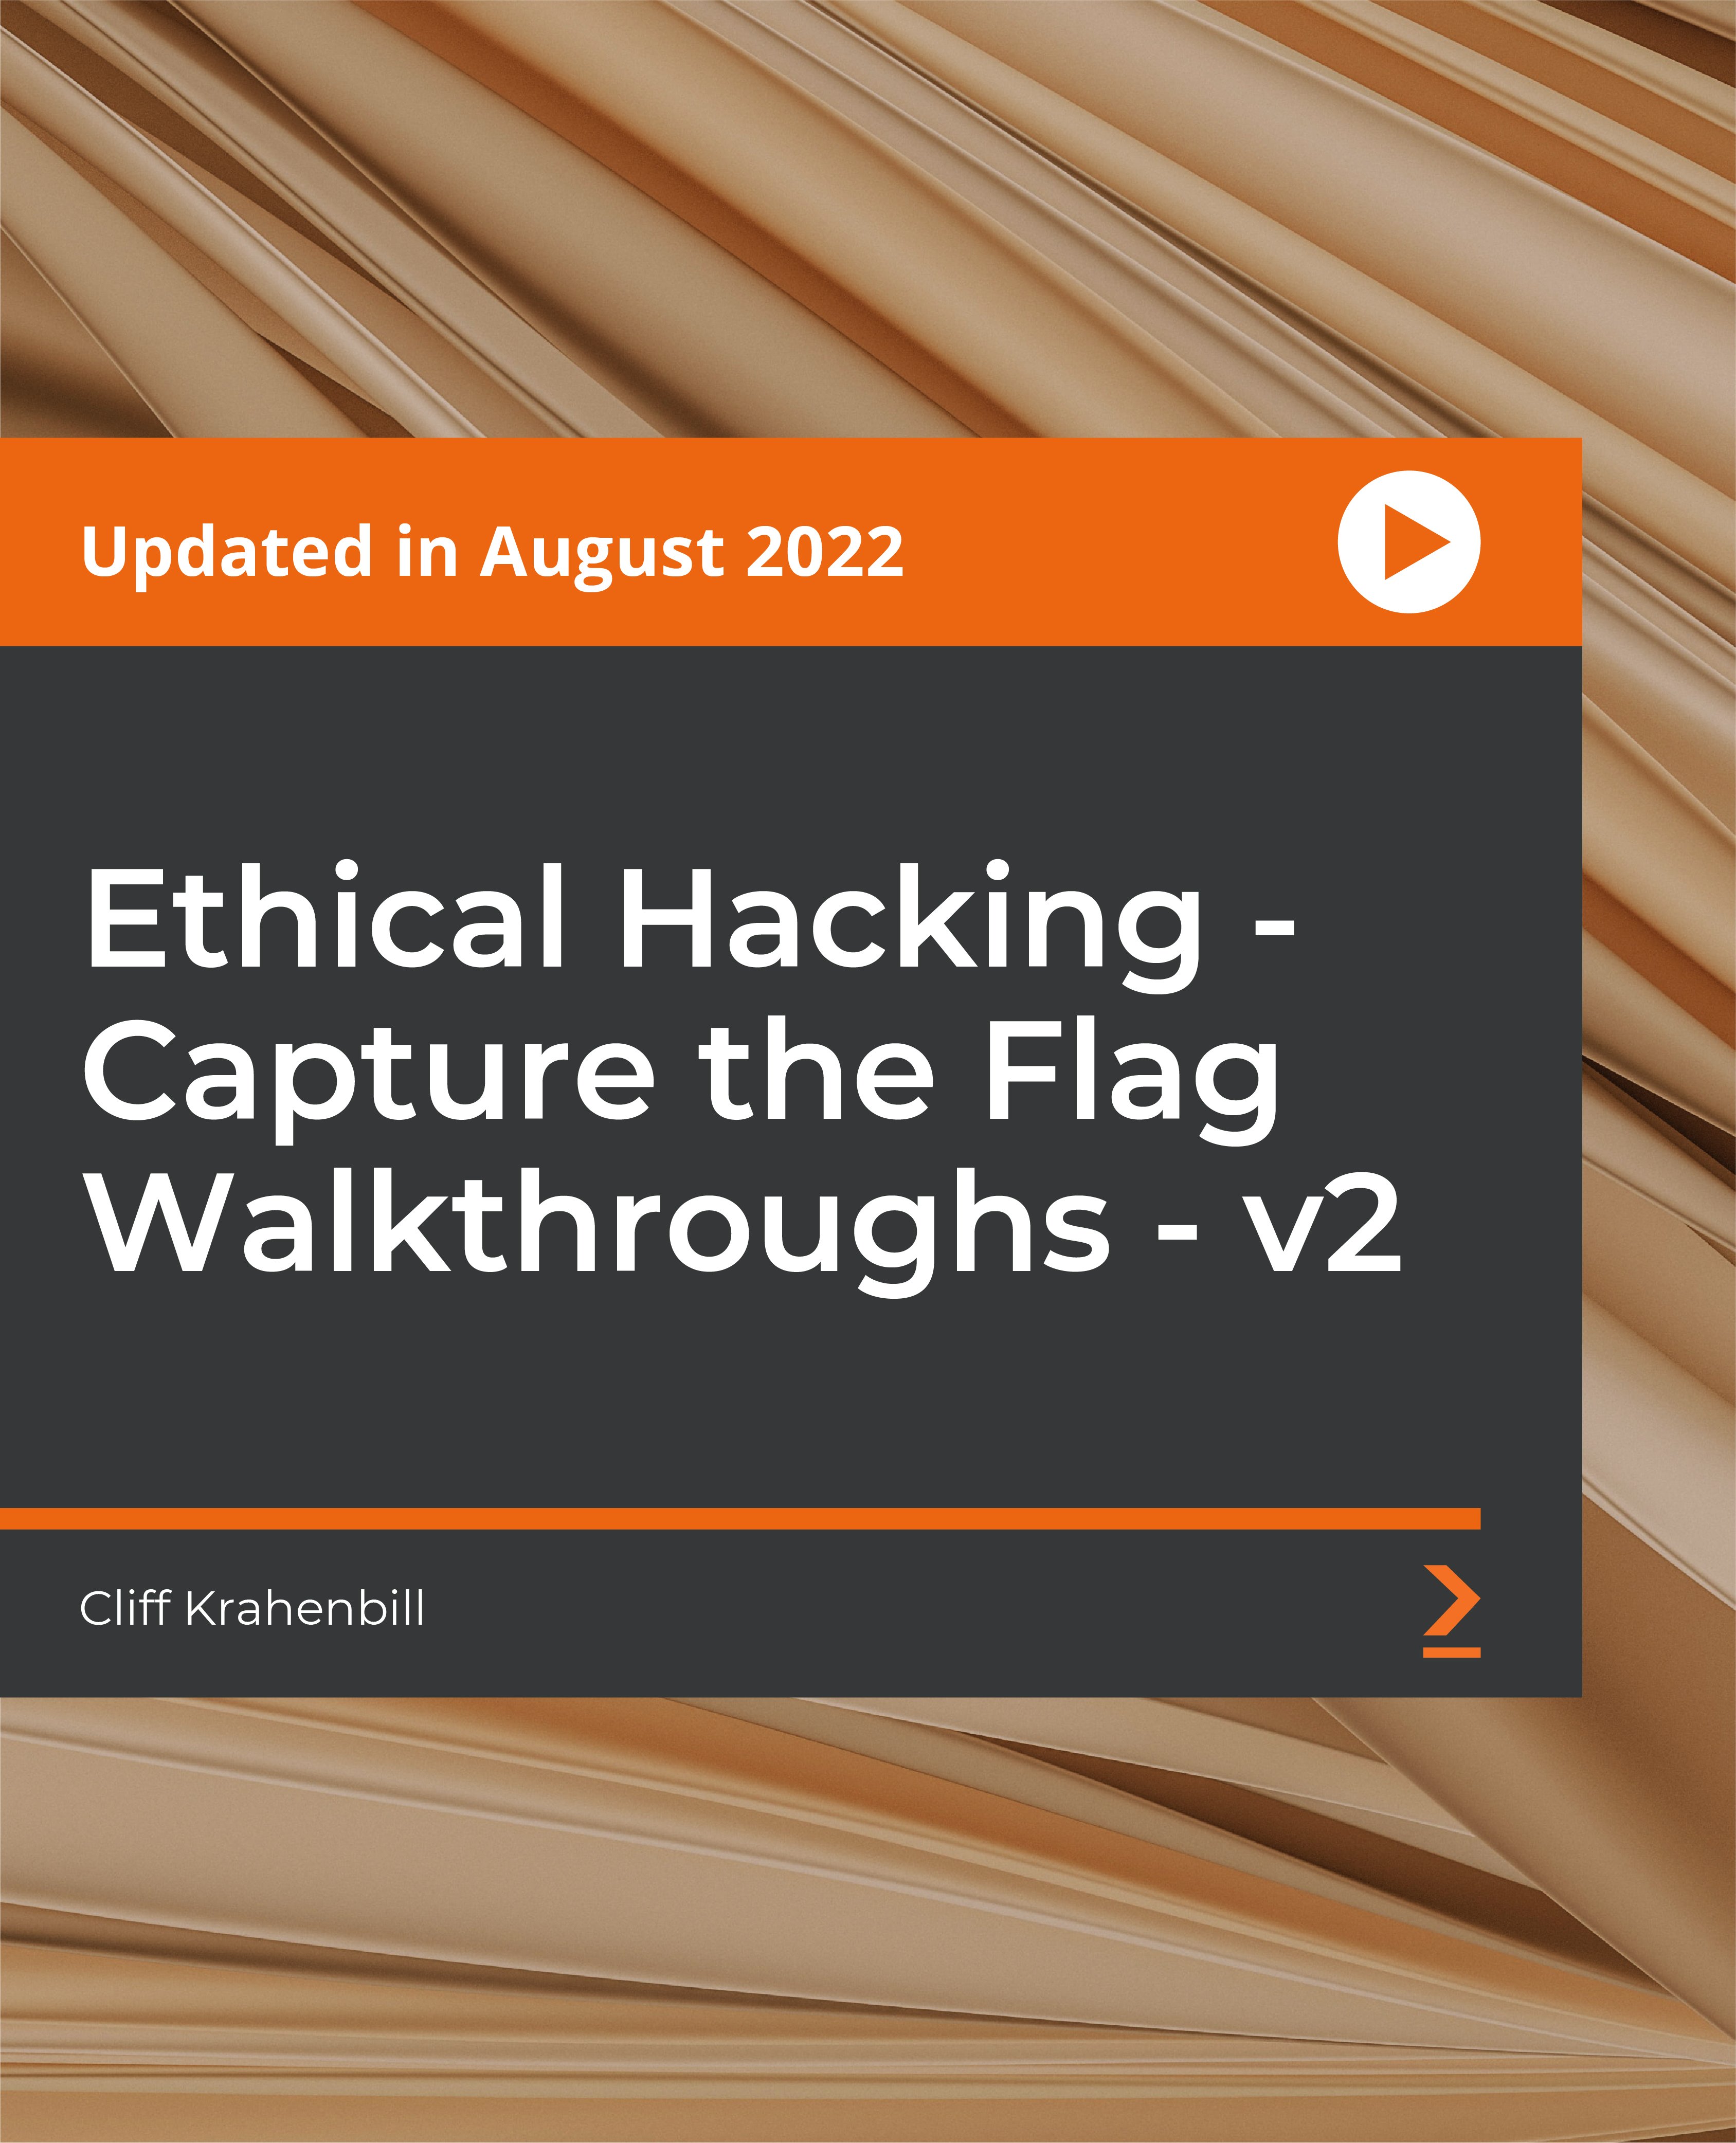 Ethical Hacking - Capture the Flag Walkthroughs - v2